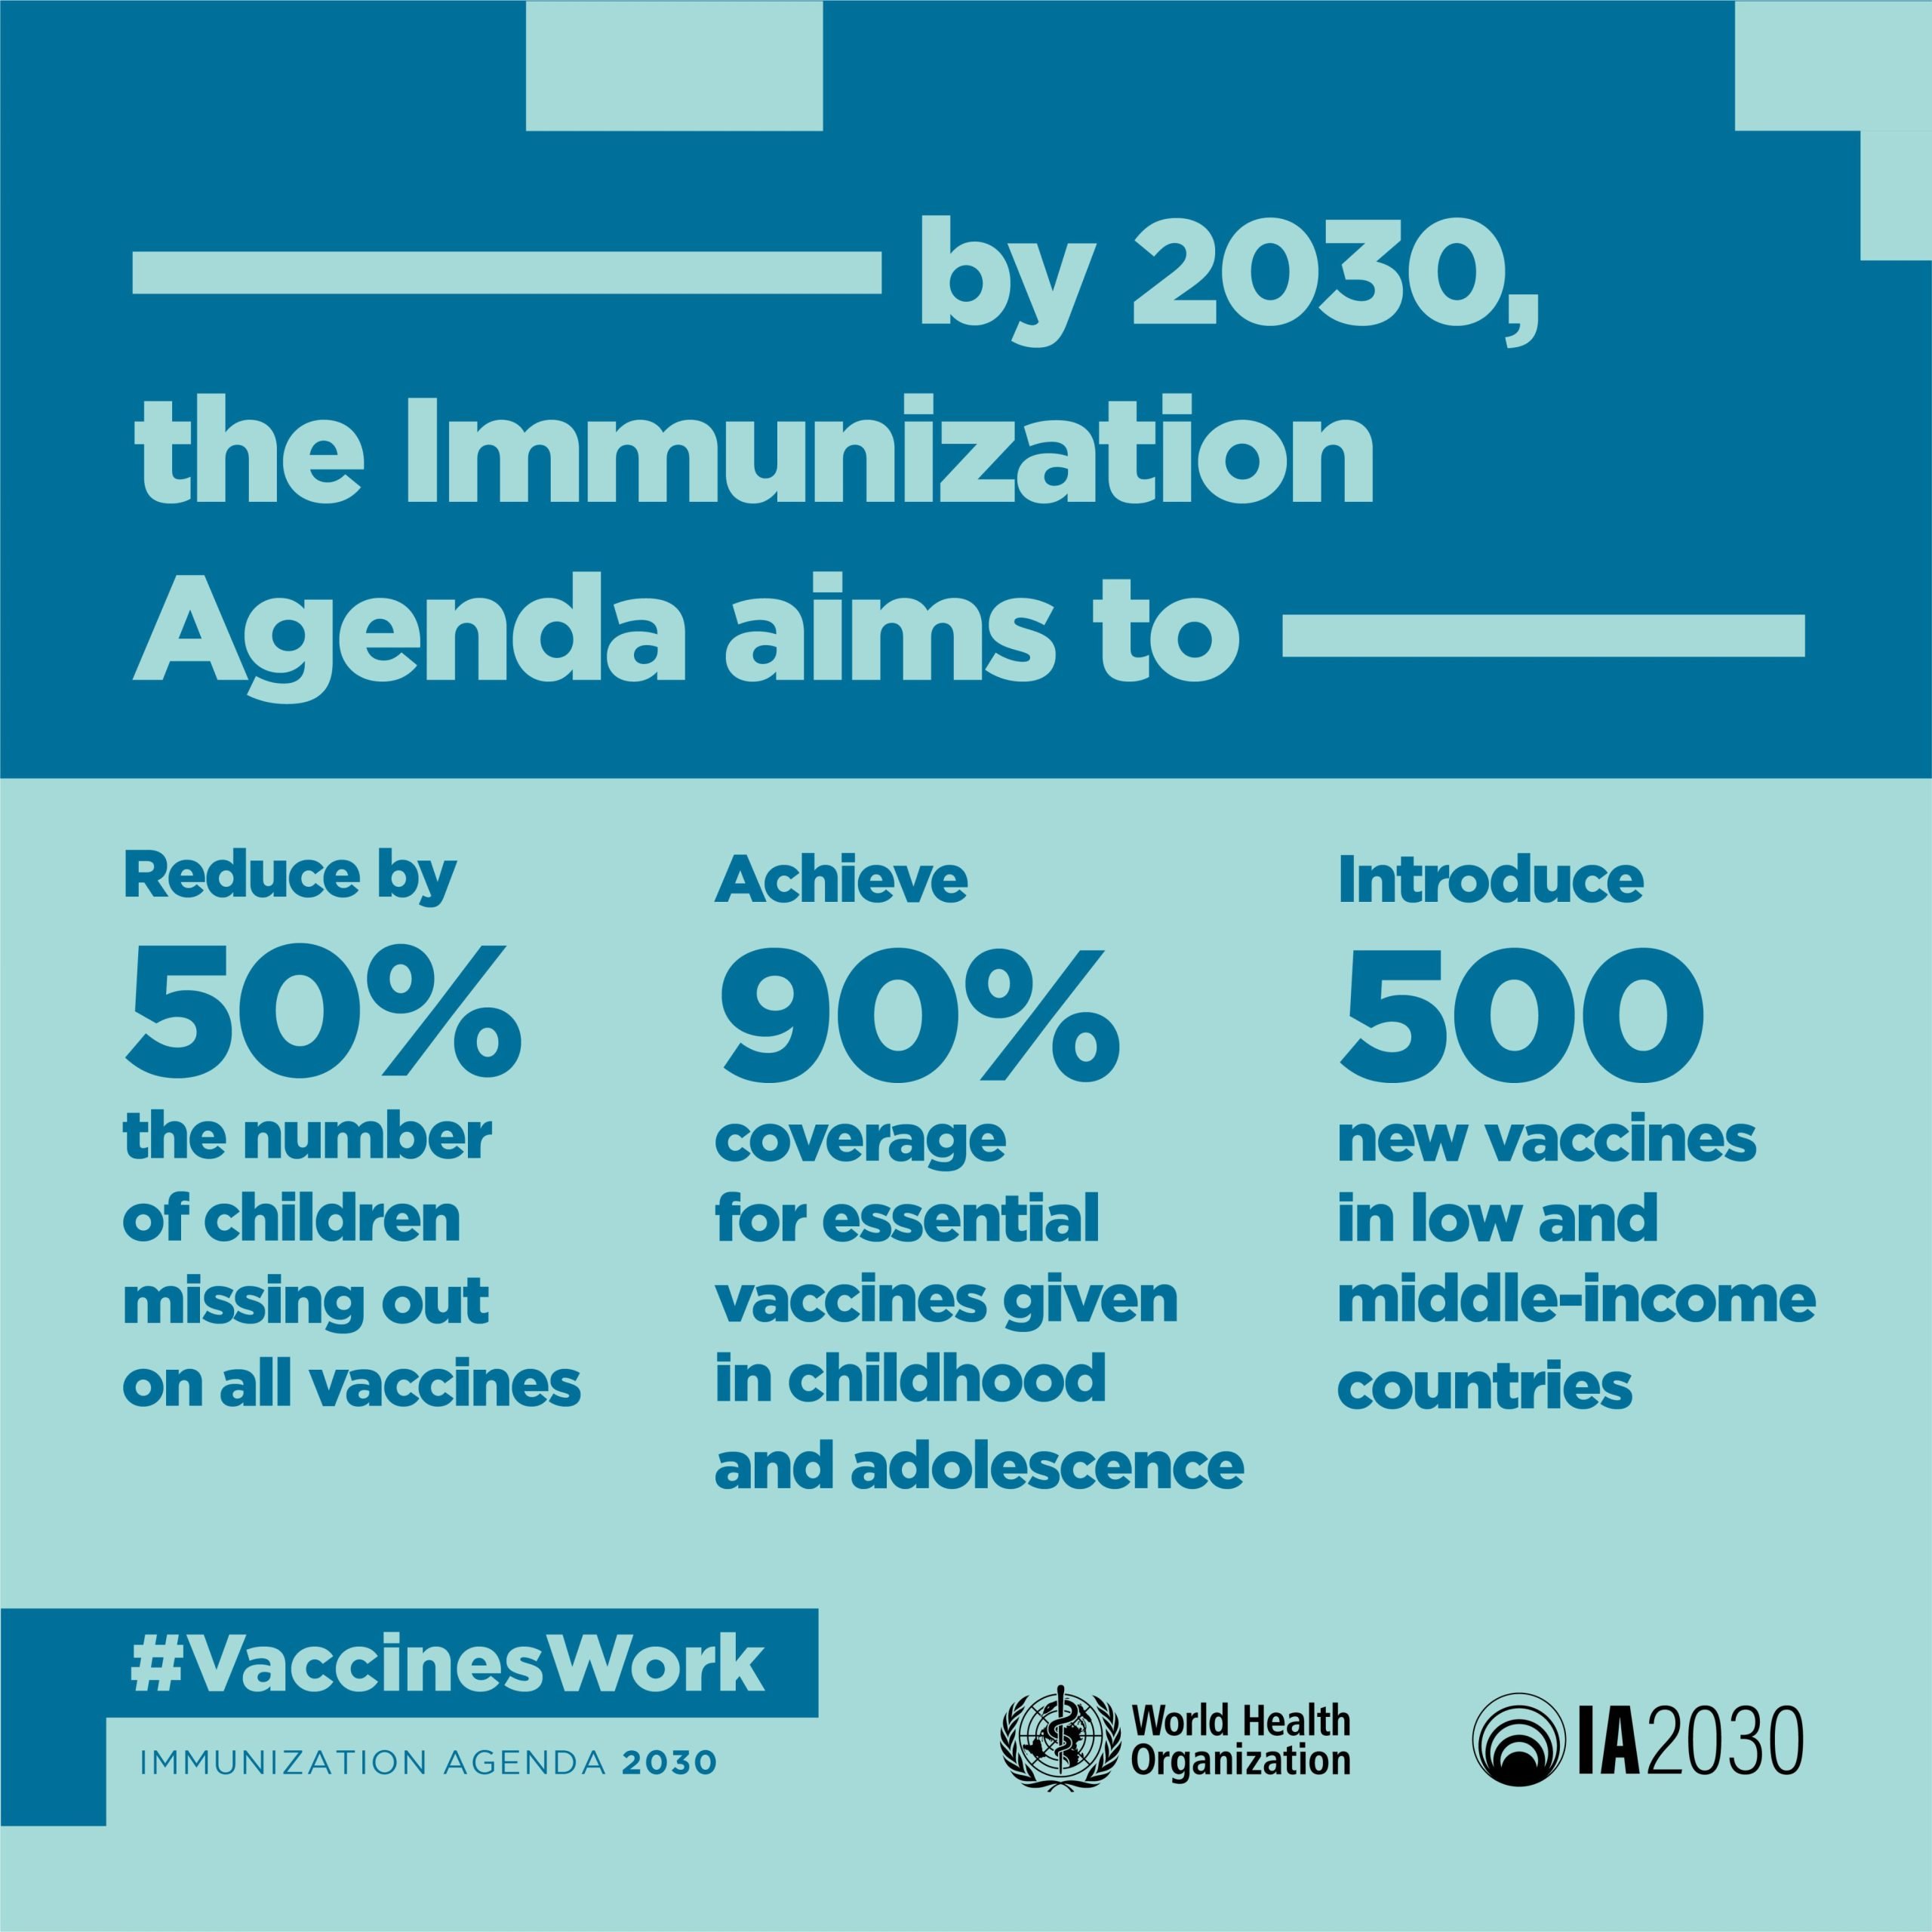 К 2030 году ВОЗ планирует внедрить более 500 новых вакцин. Вакцины против Covid-19 — лишь первые из многих, которые появятся в ближайшее время.